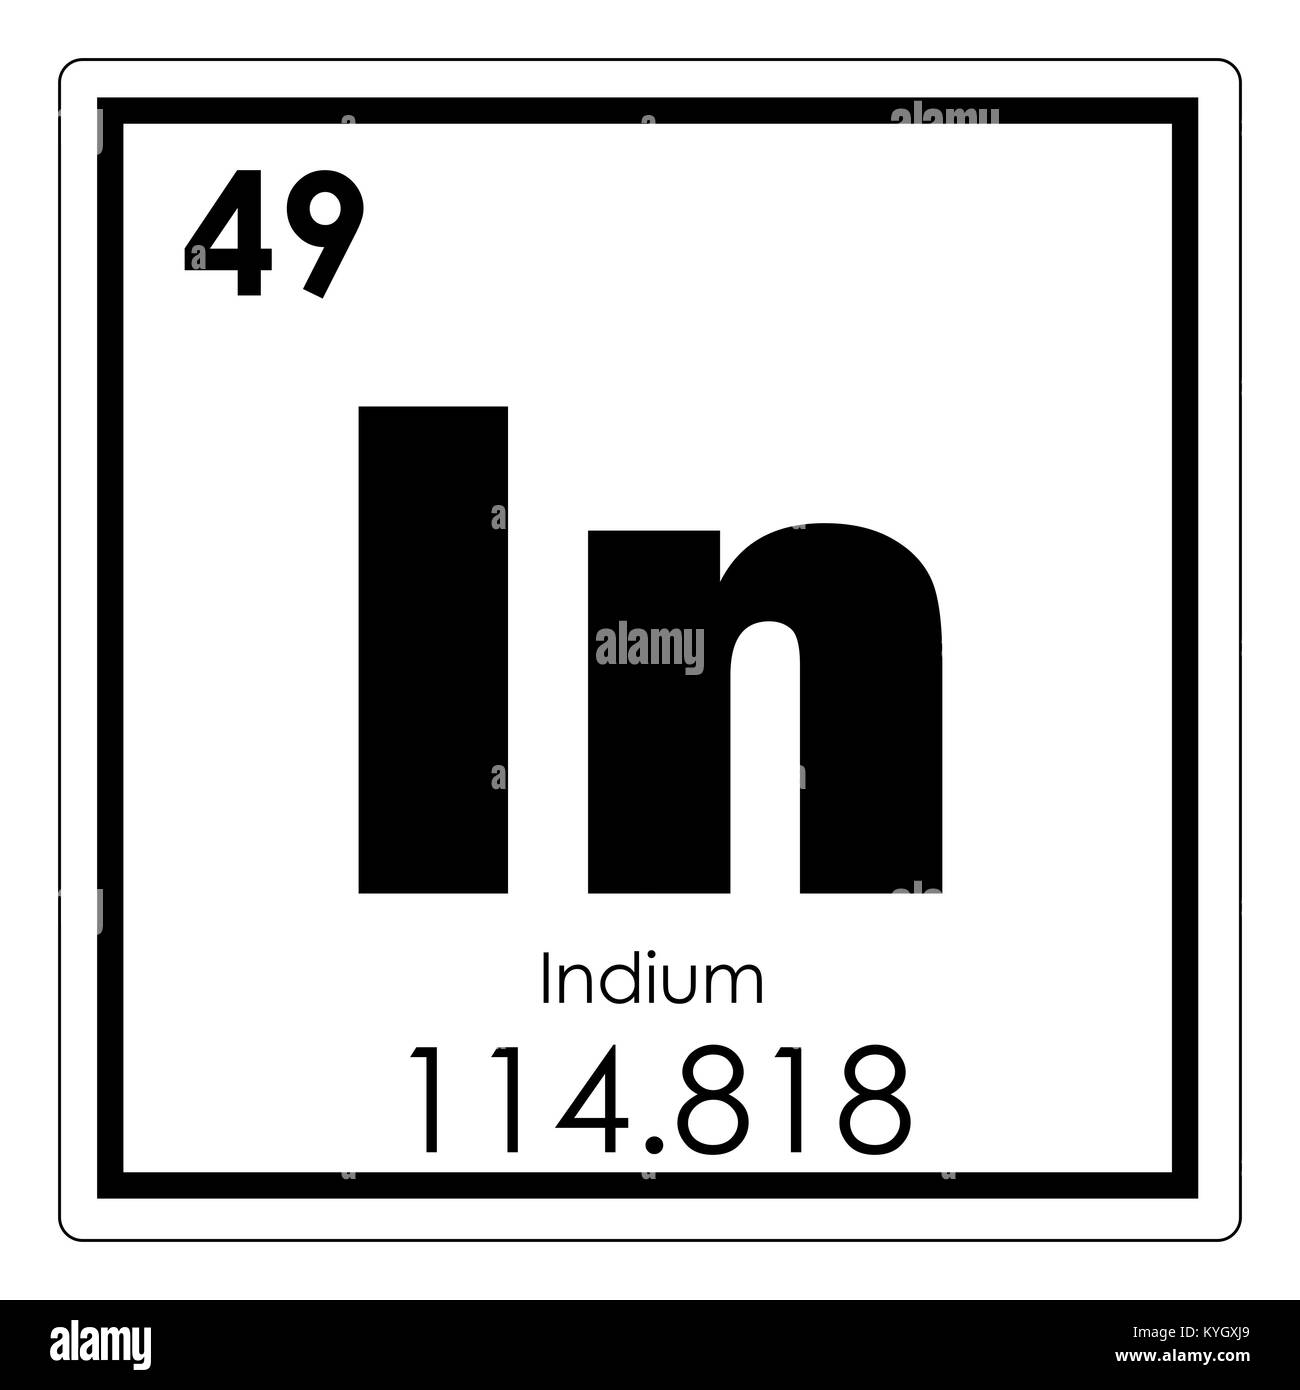 Индий химический элемент